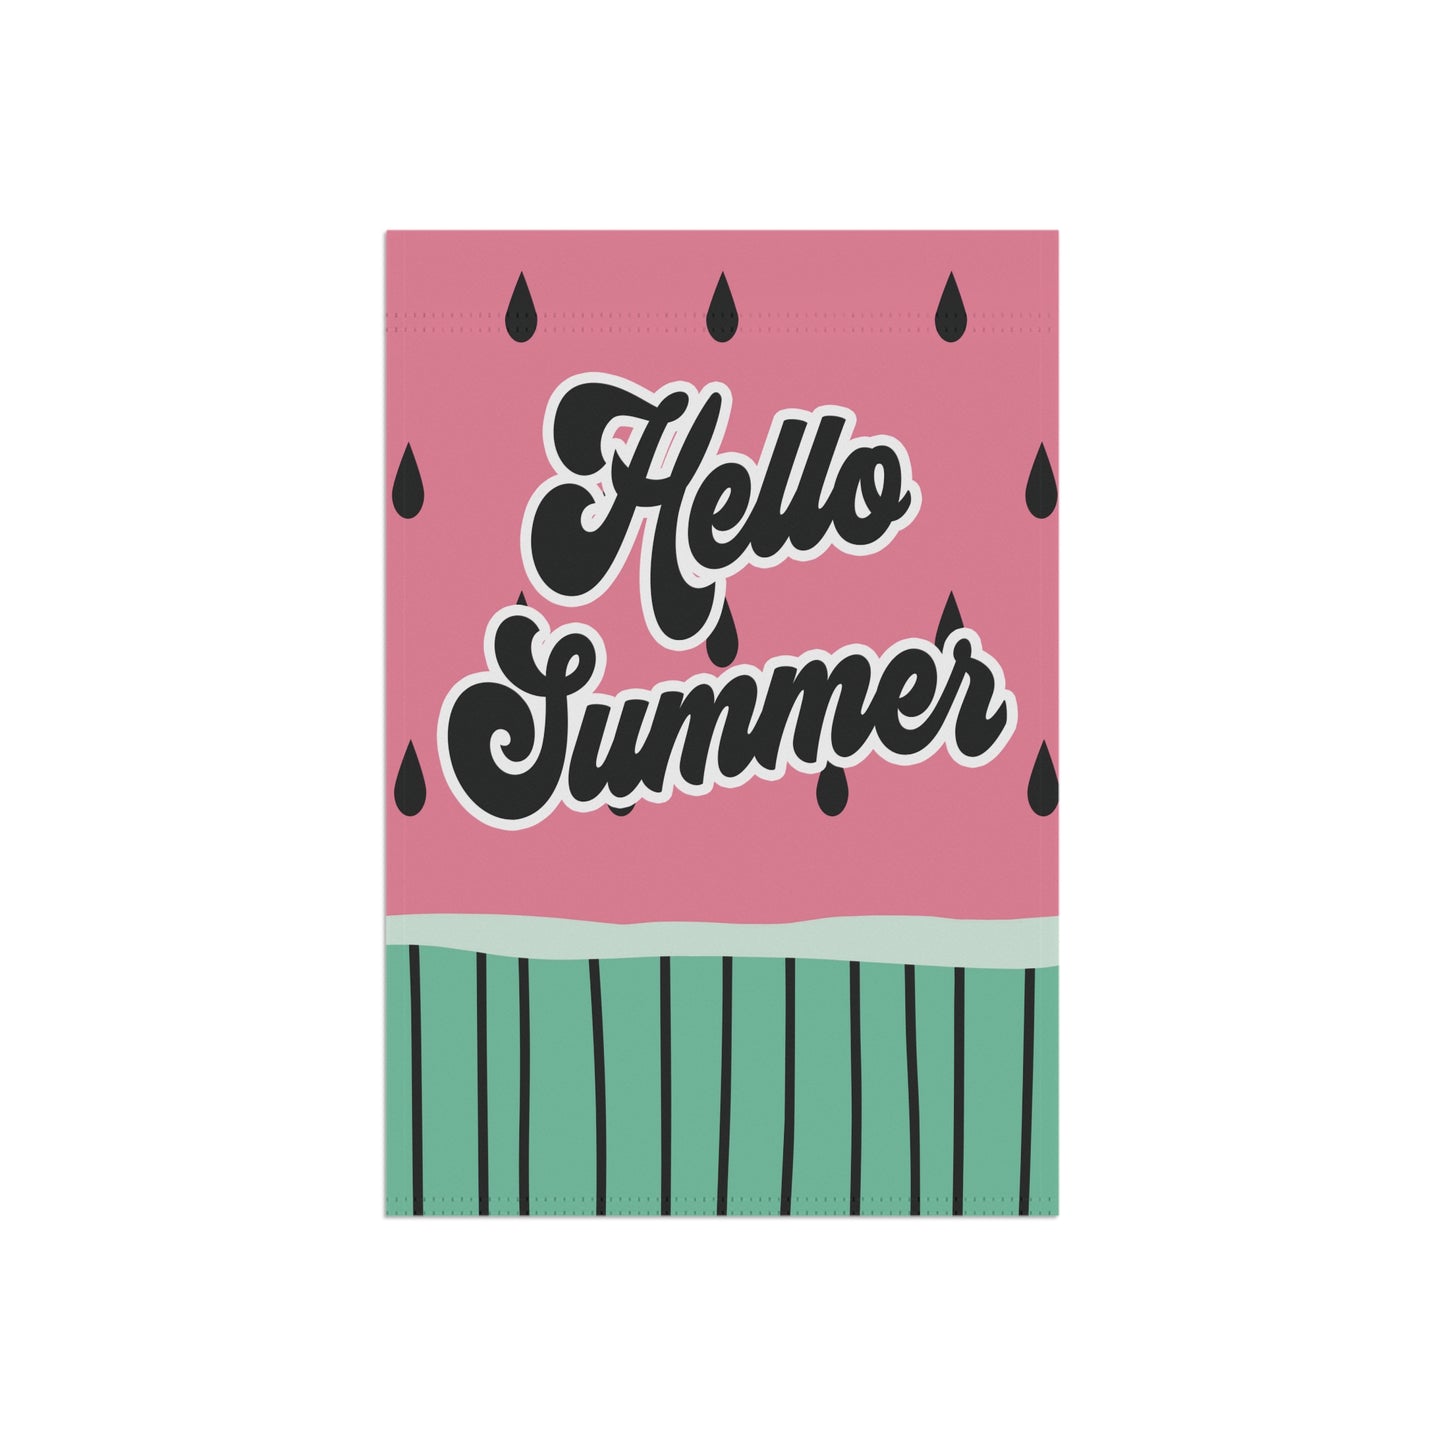 Hello Summer Watermelon Garden Flag - Premium Home Decor - Just $21.99! Shop now at Nine Thirty Nine Design